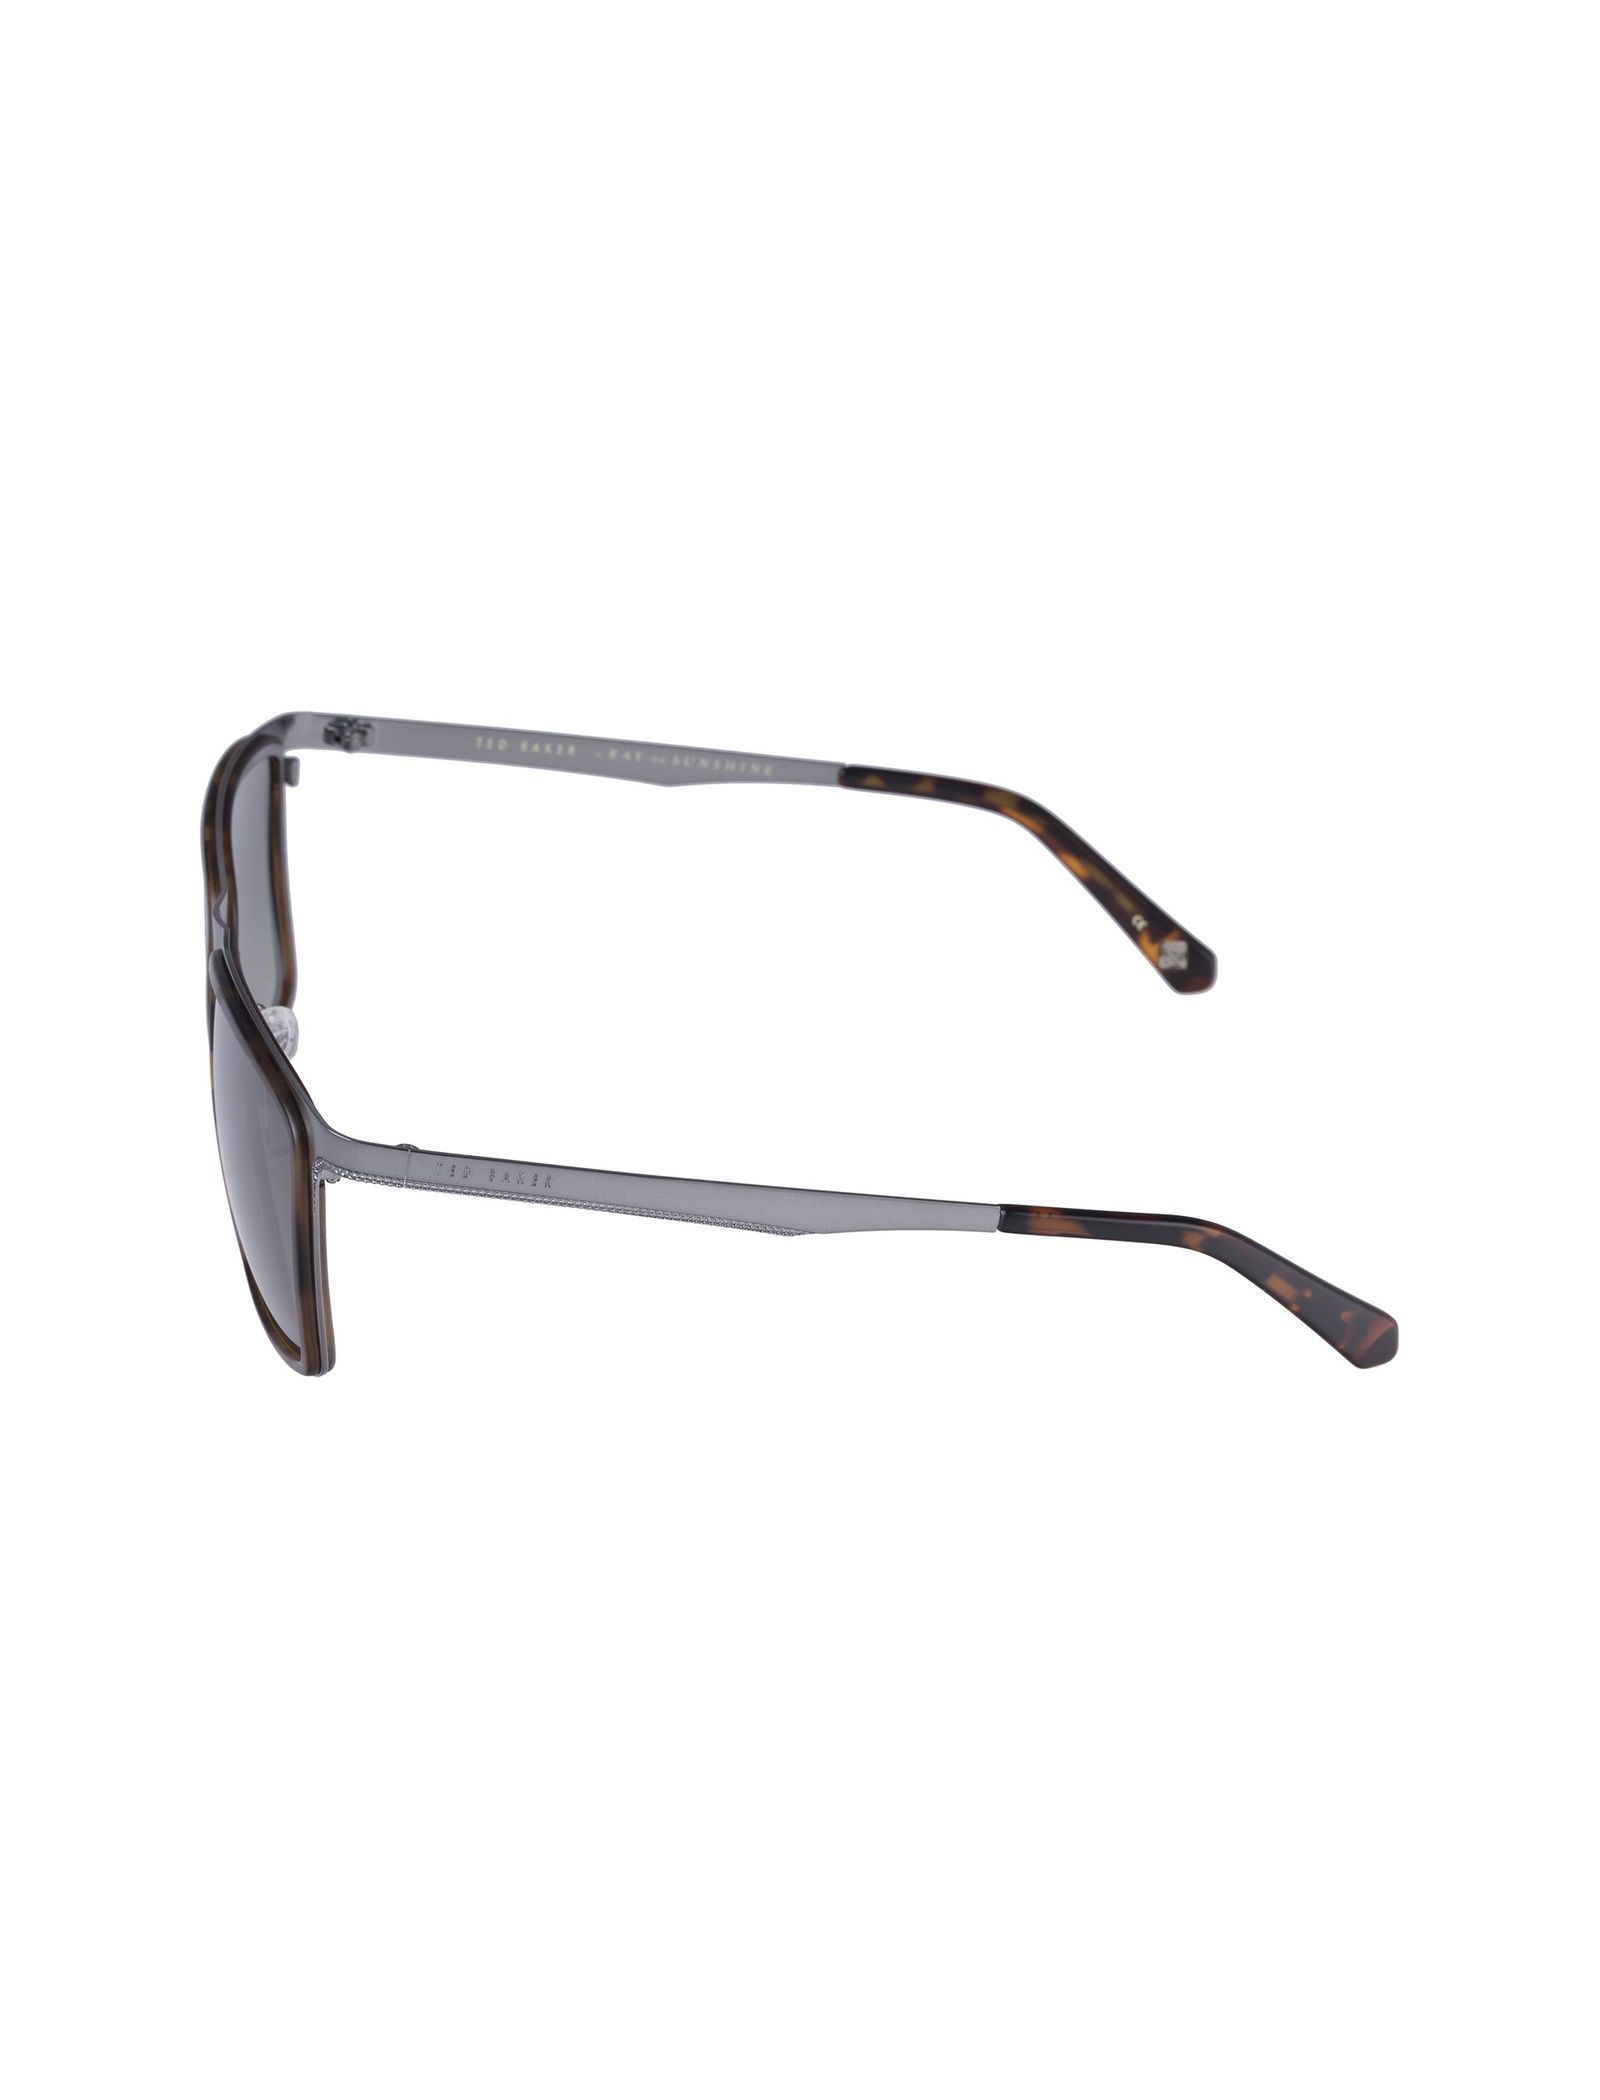 عینک آفتابی ویفرر مردانه - تد بیکر - طوسي و قهوه اي - 4